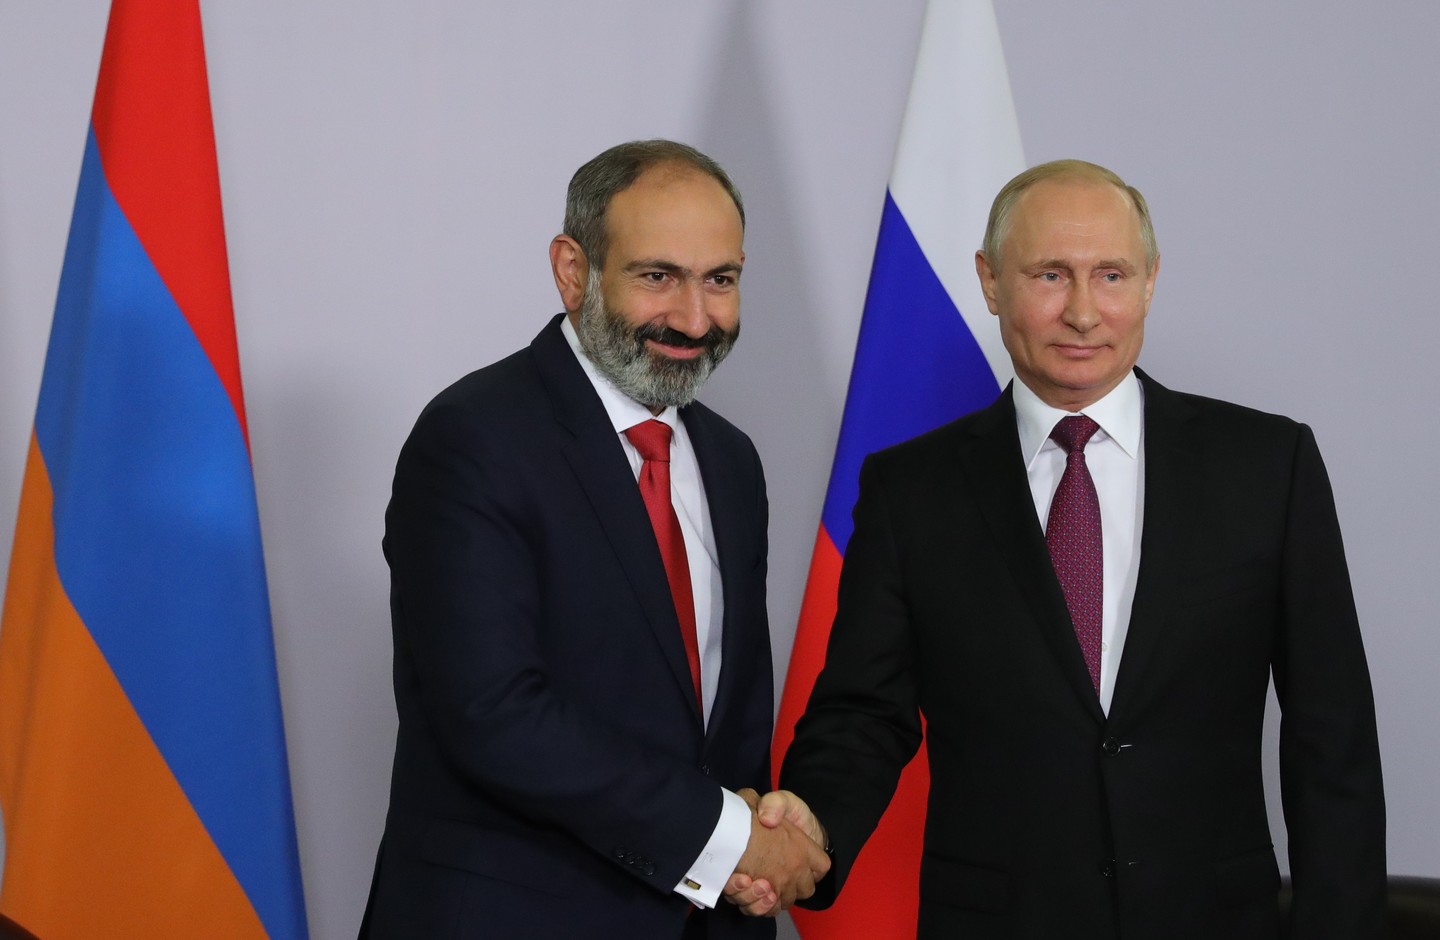 Рабочая поездка премьер-министра Армении в Москву чрезвычайно важна - эксперт